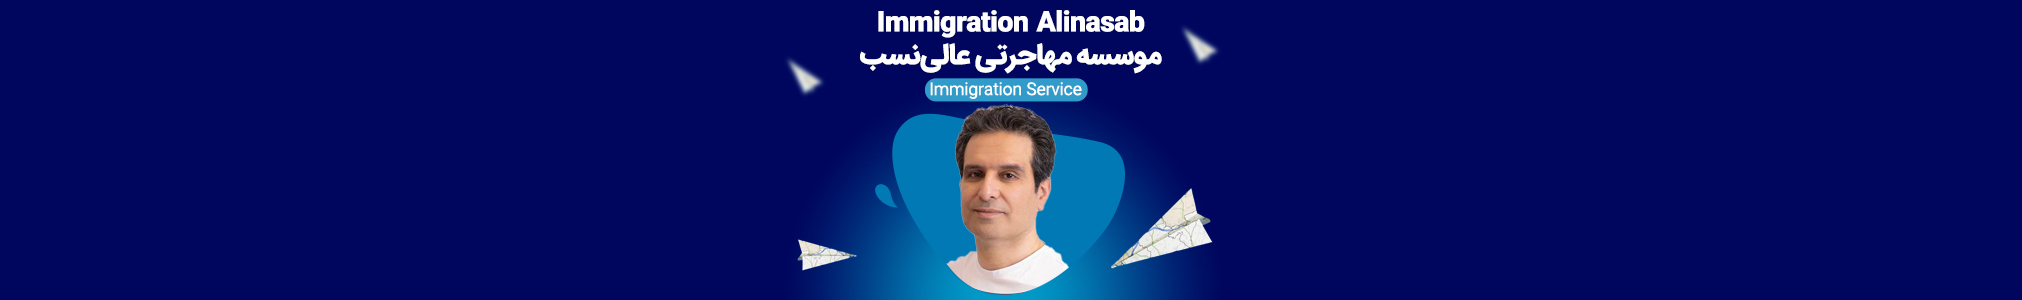 Immigration Alinasab